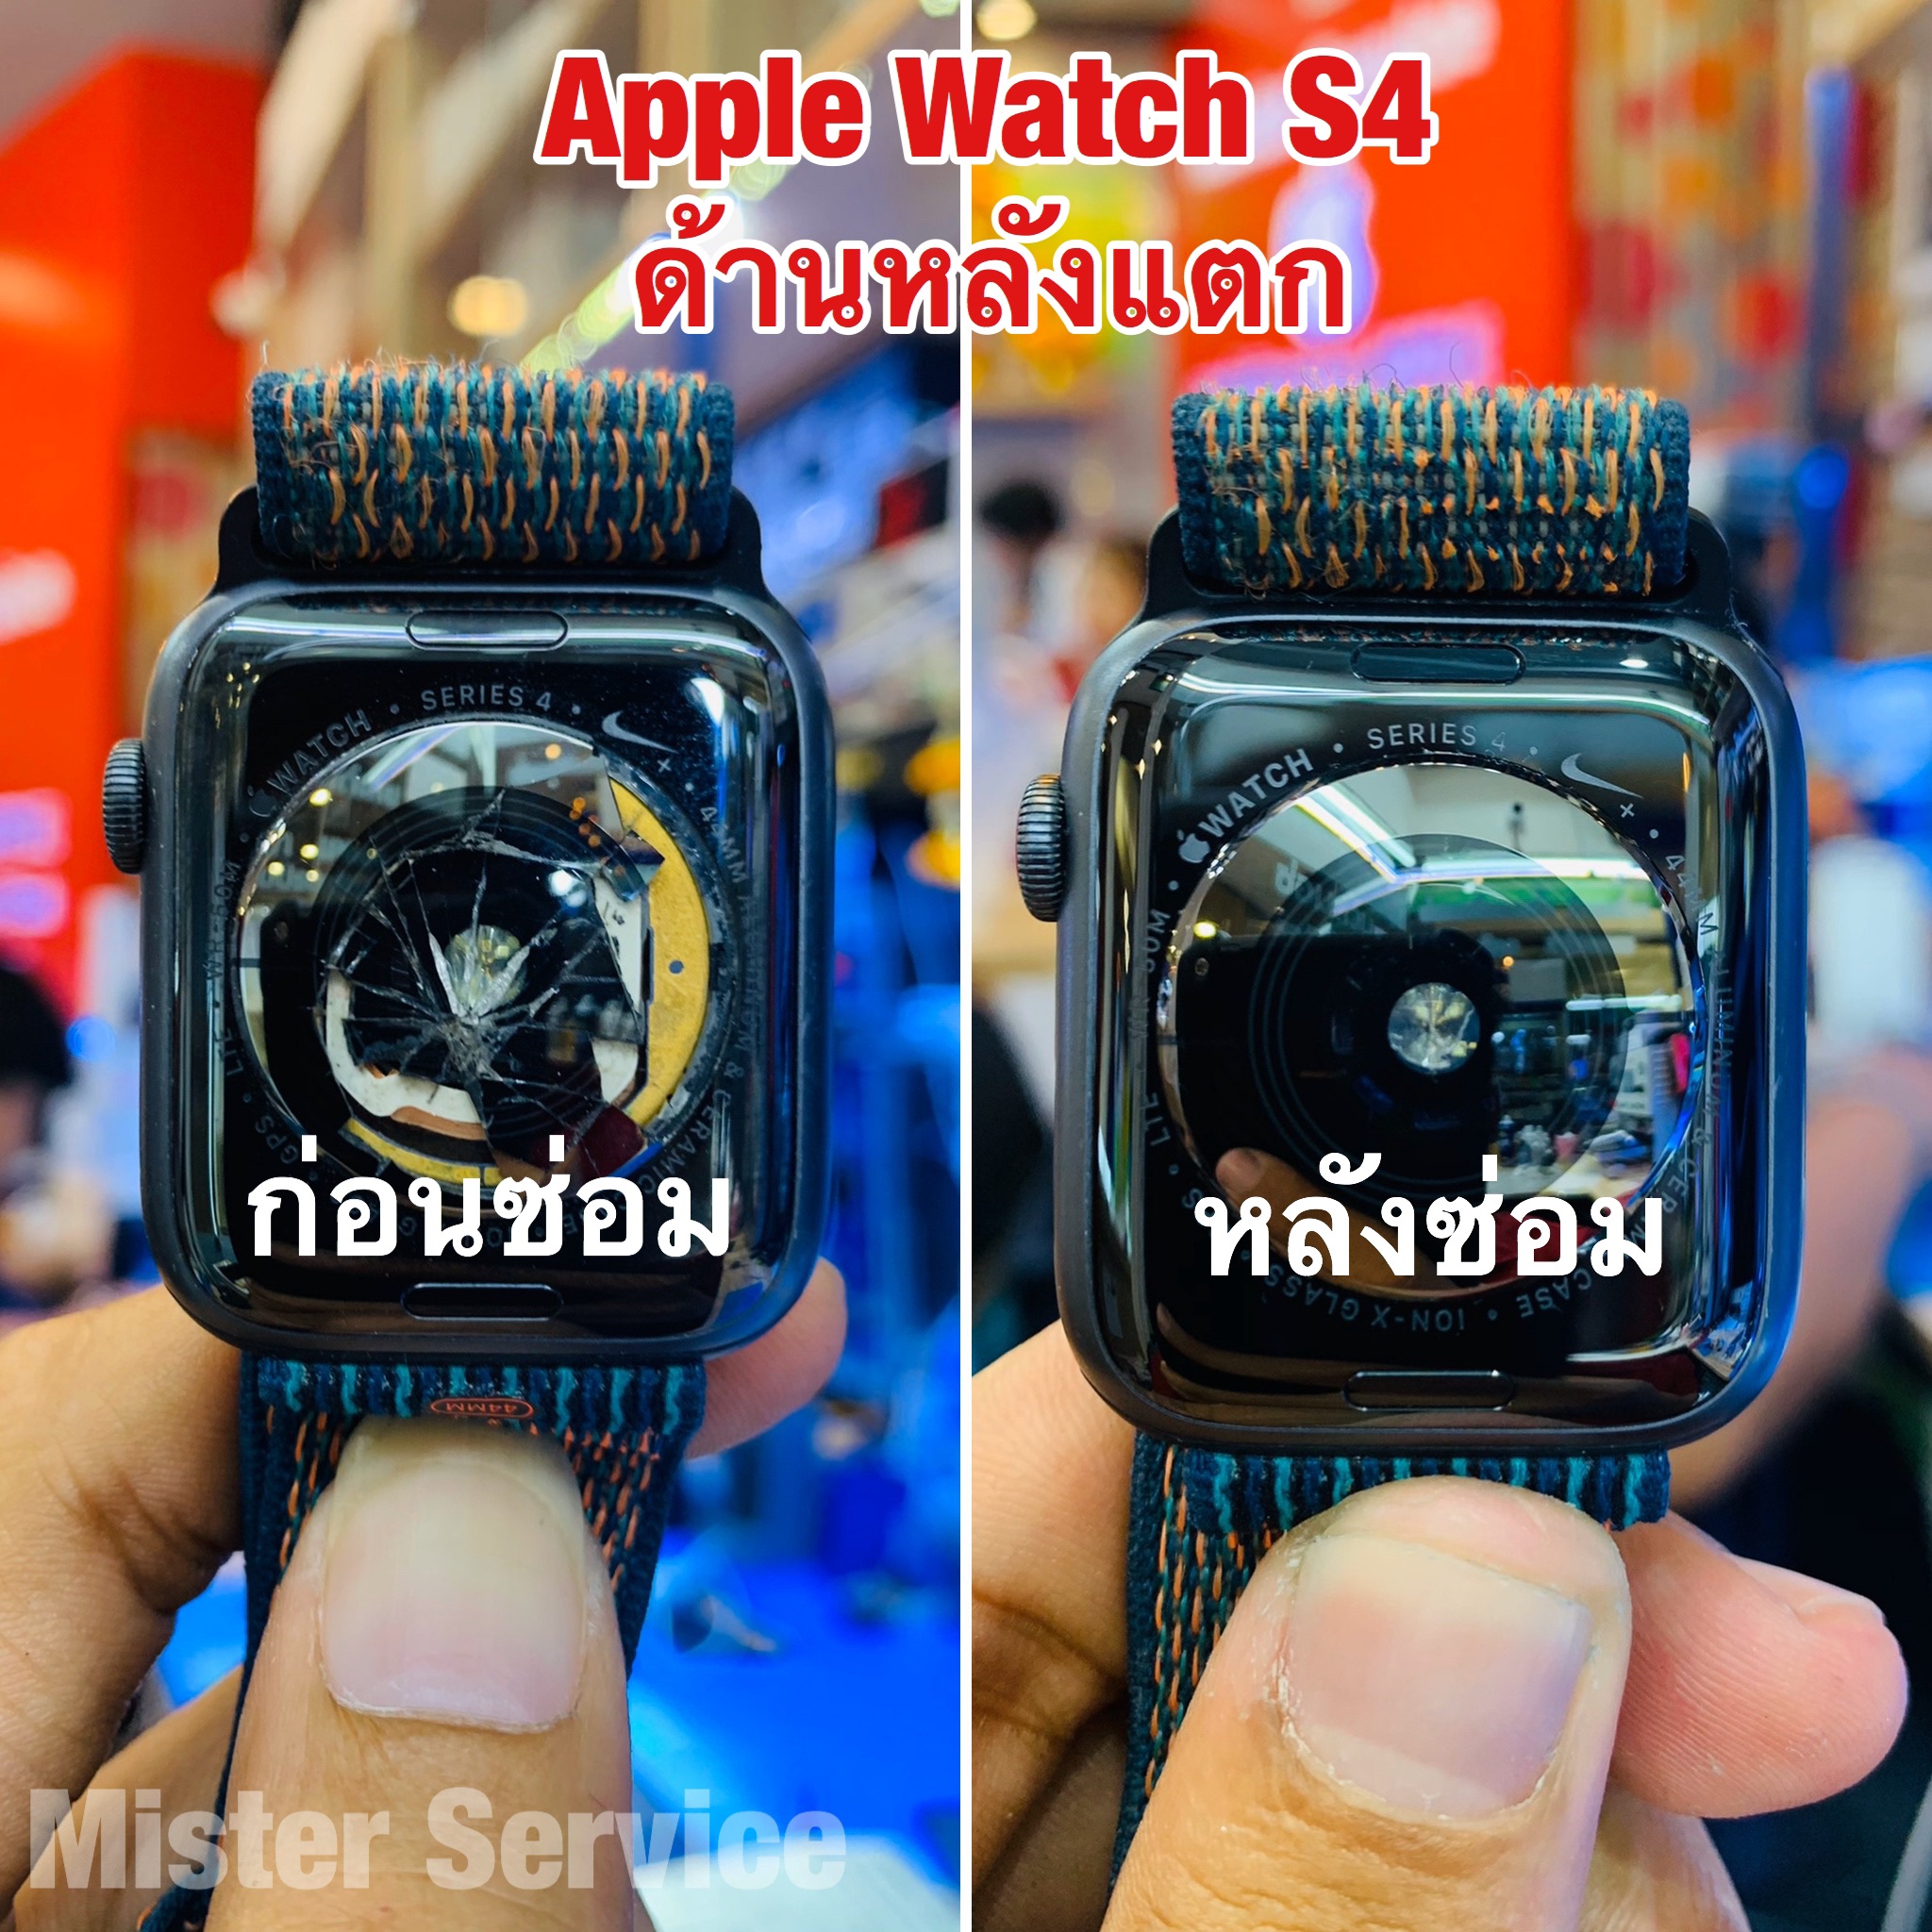 ร้านซ่อม Apple Watch ระนอง